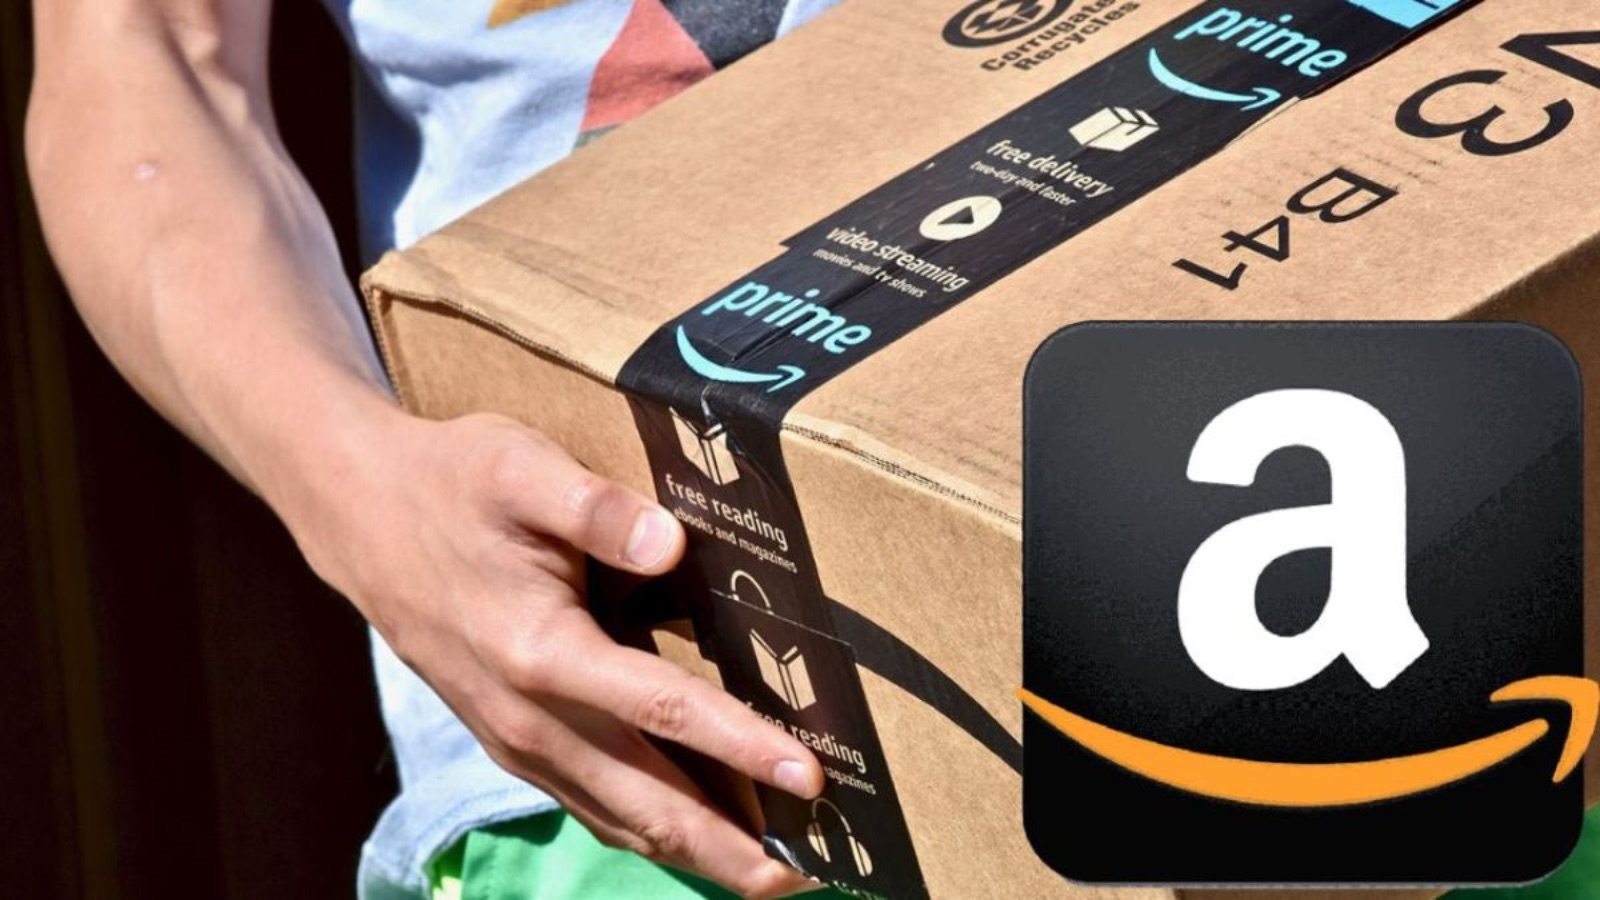 Amazon vola con le offerte al 70% e codici sconto gratis